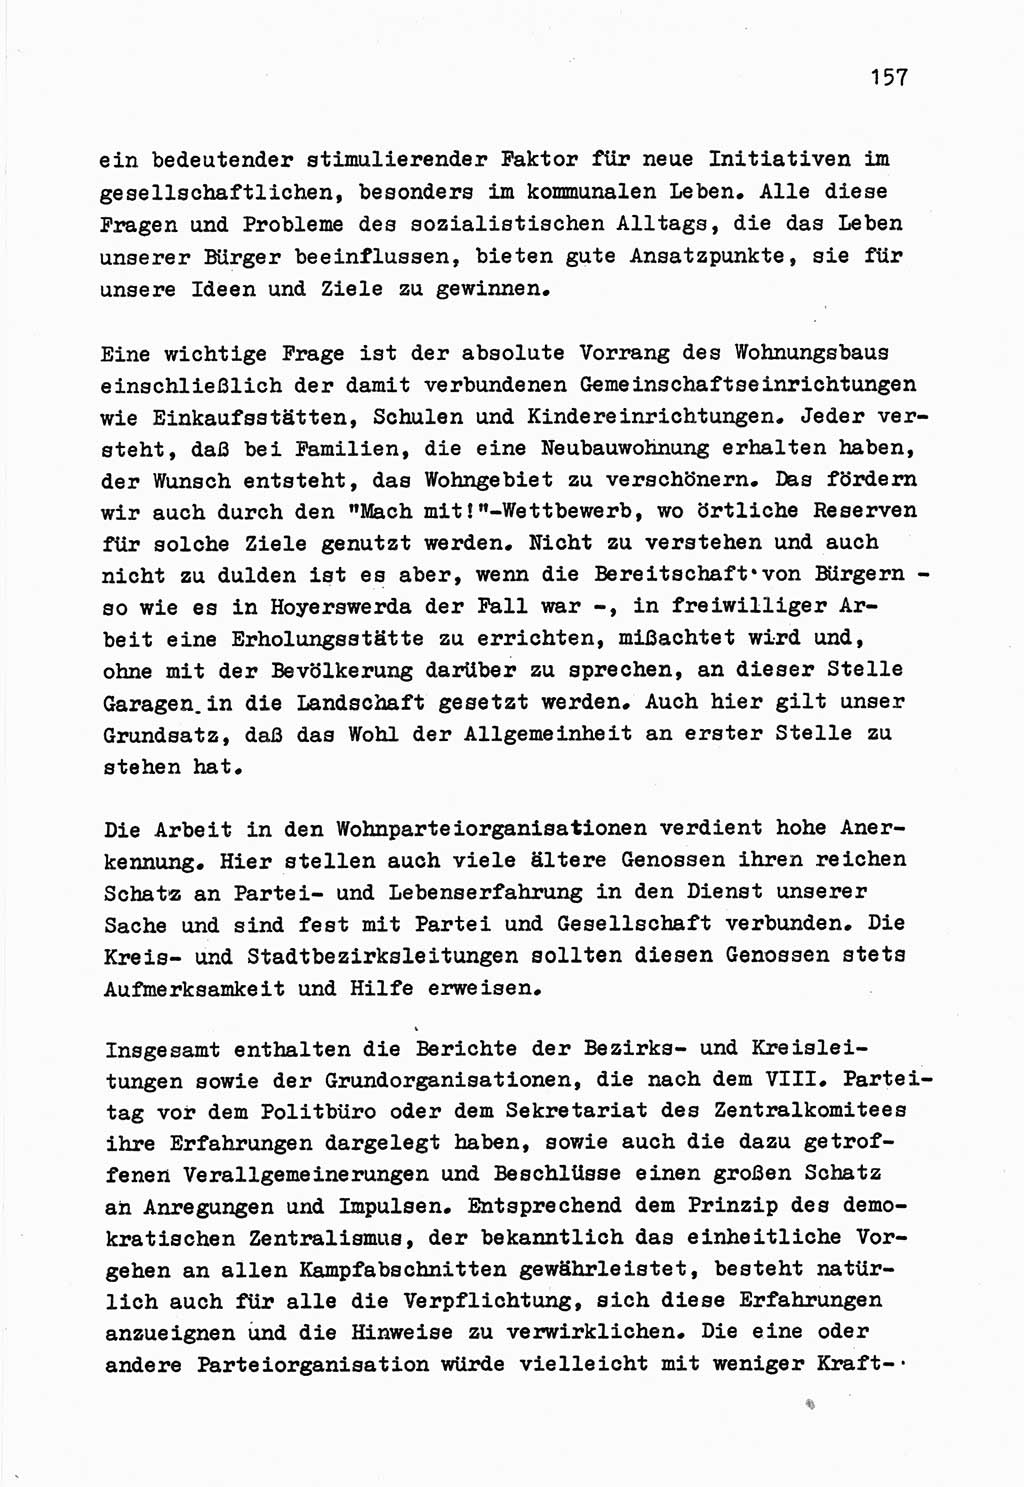 Zu Fragen der Parteiarbeit [Sozialistische Einheitspartei Deutschlands (SED) Deutsche Demokratische Republik (DDR)] 1979, Seite 157 (Fr. PA SED DDR 1979, S. 157)